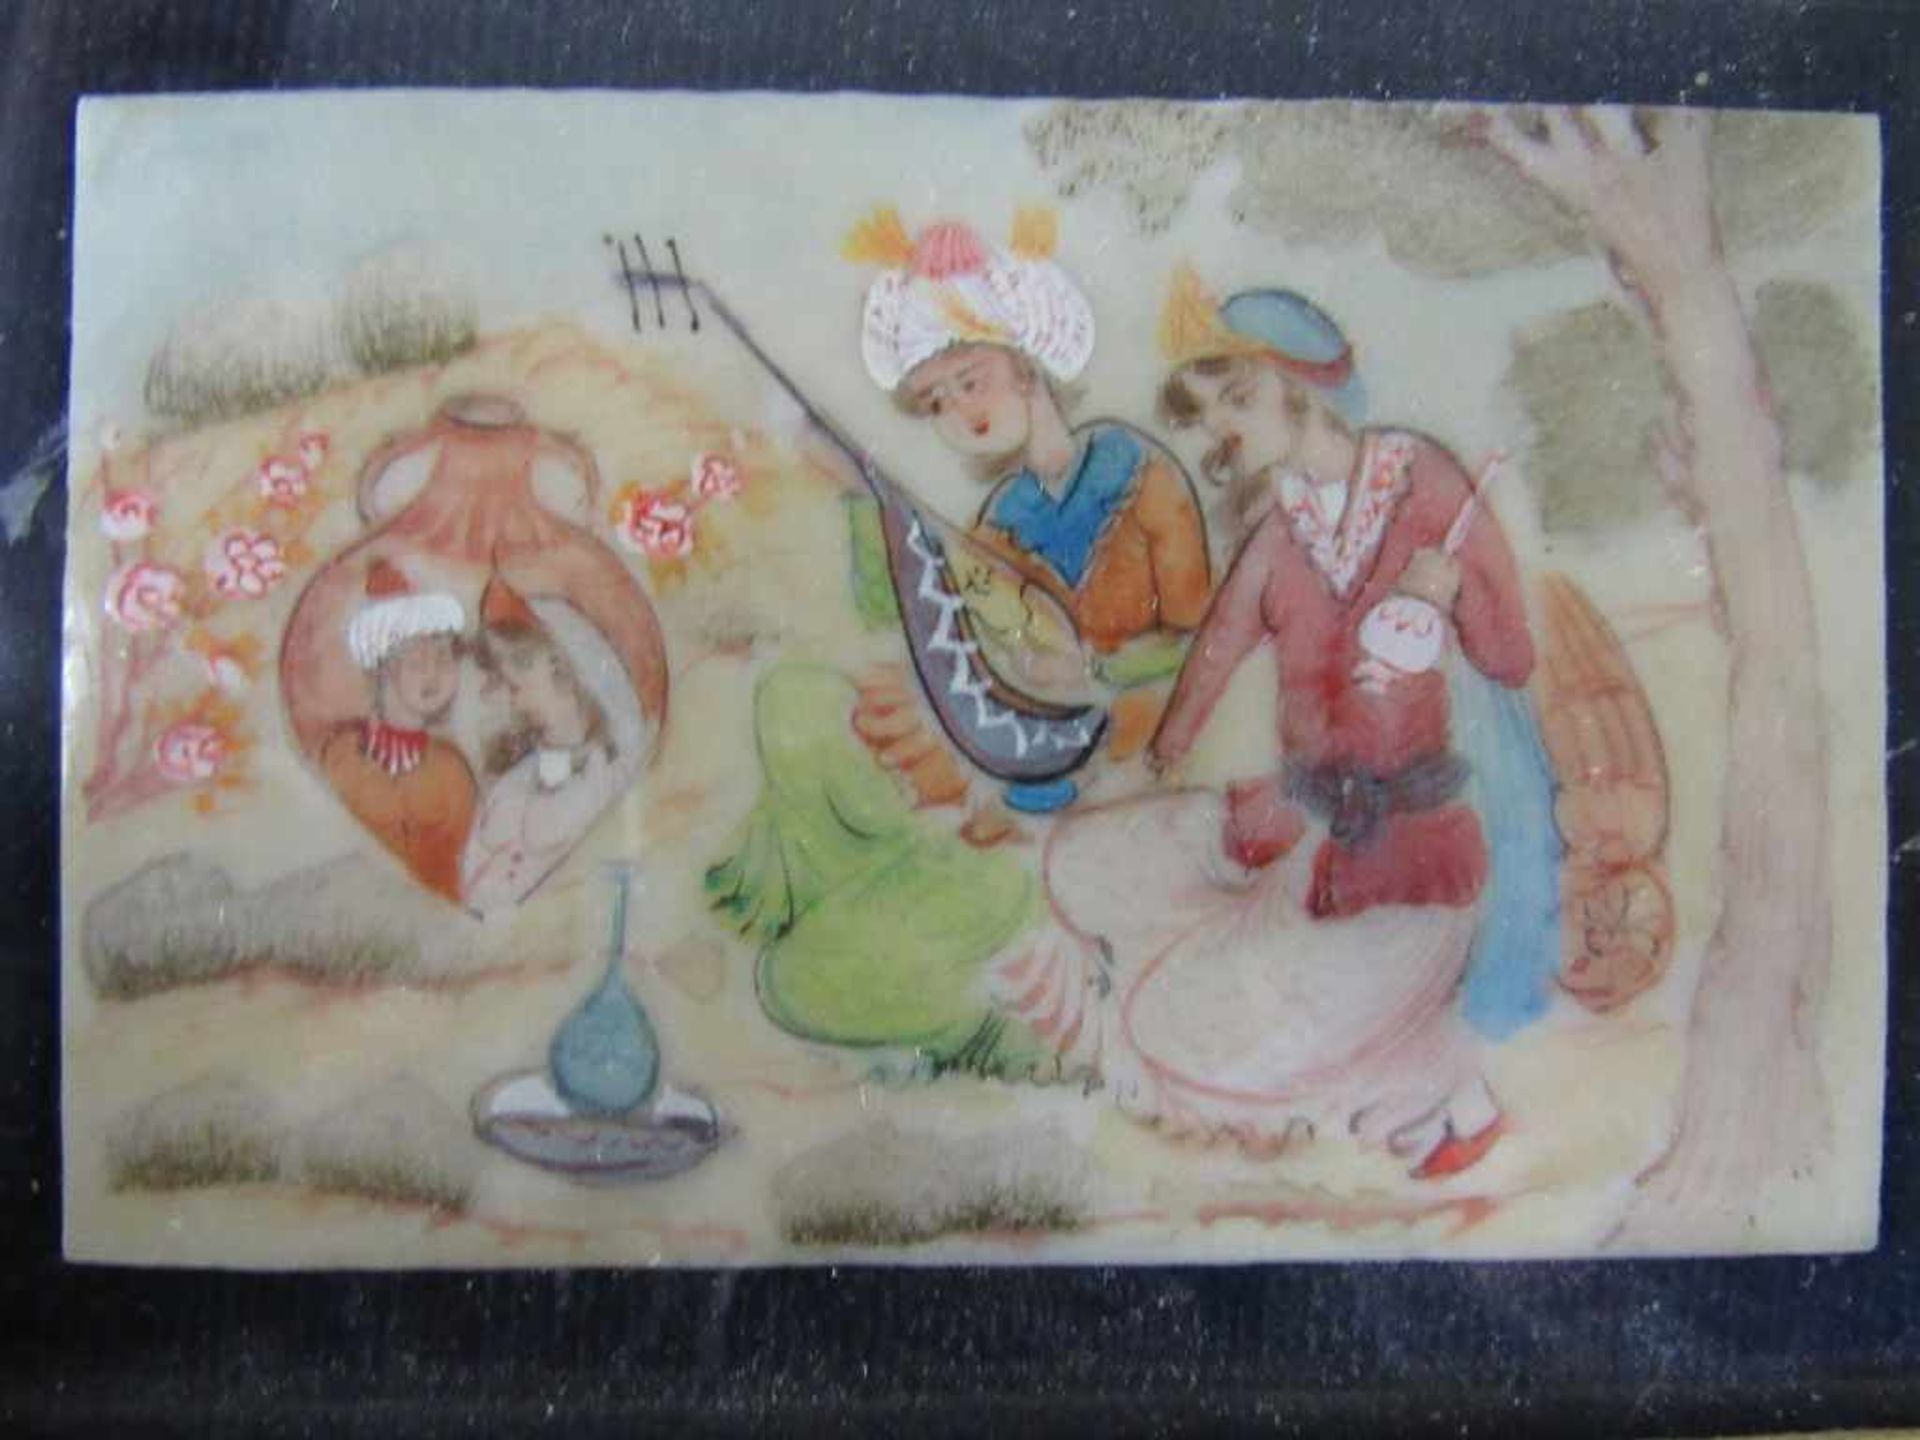 Orientalische Handmalerei in schönem Rahmen 17,5x13,5cm intarsienarbeit< - Bild 3 aus 3